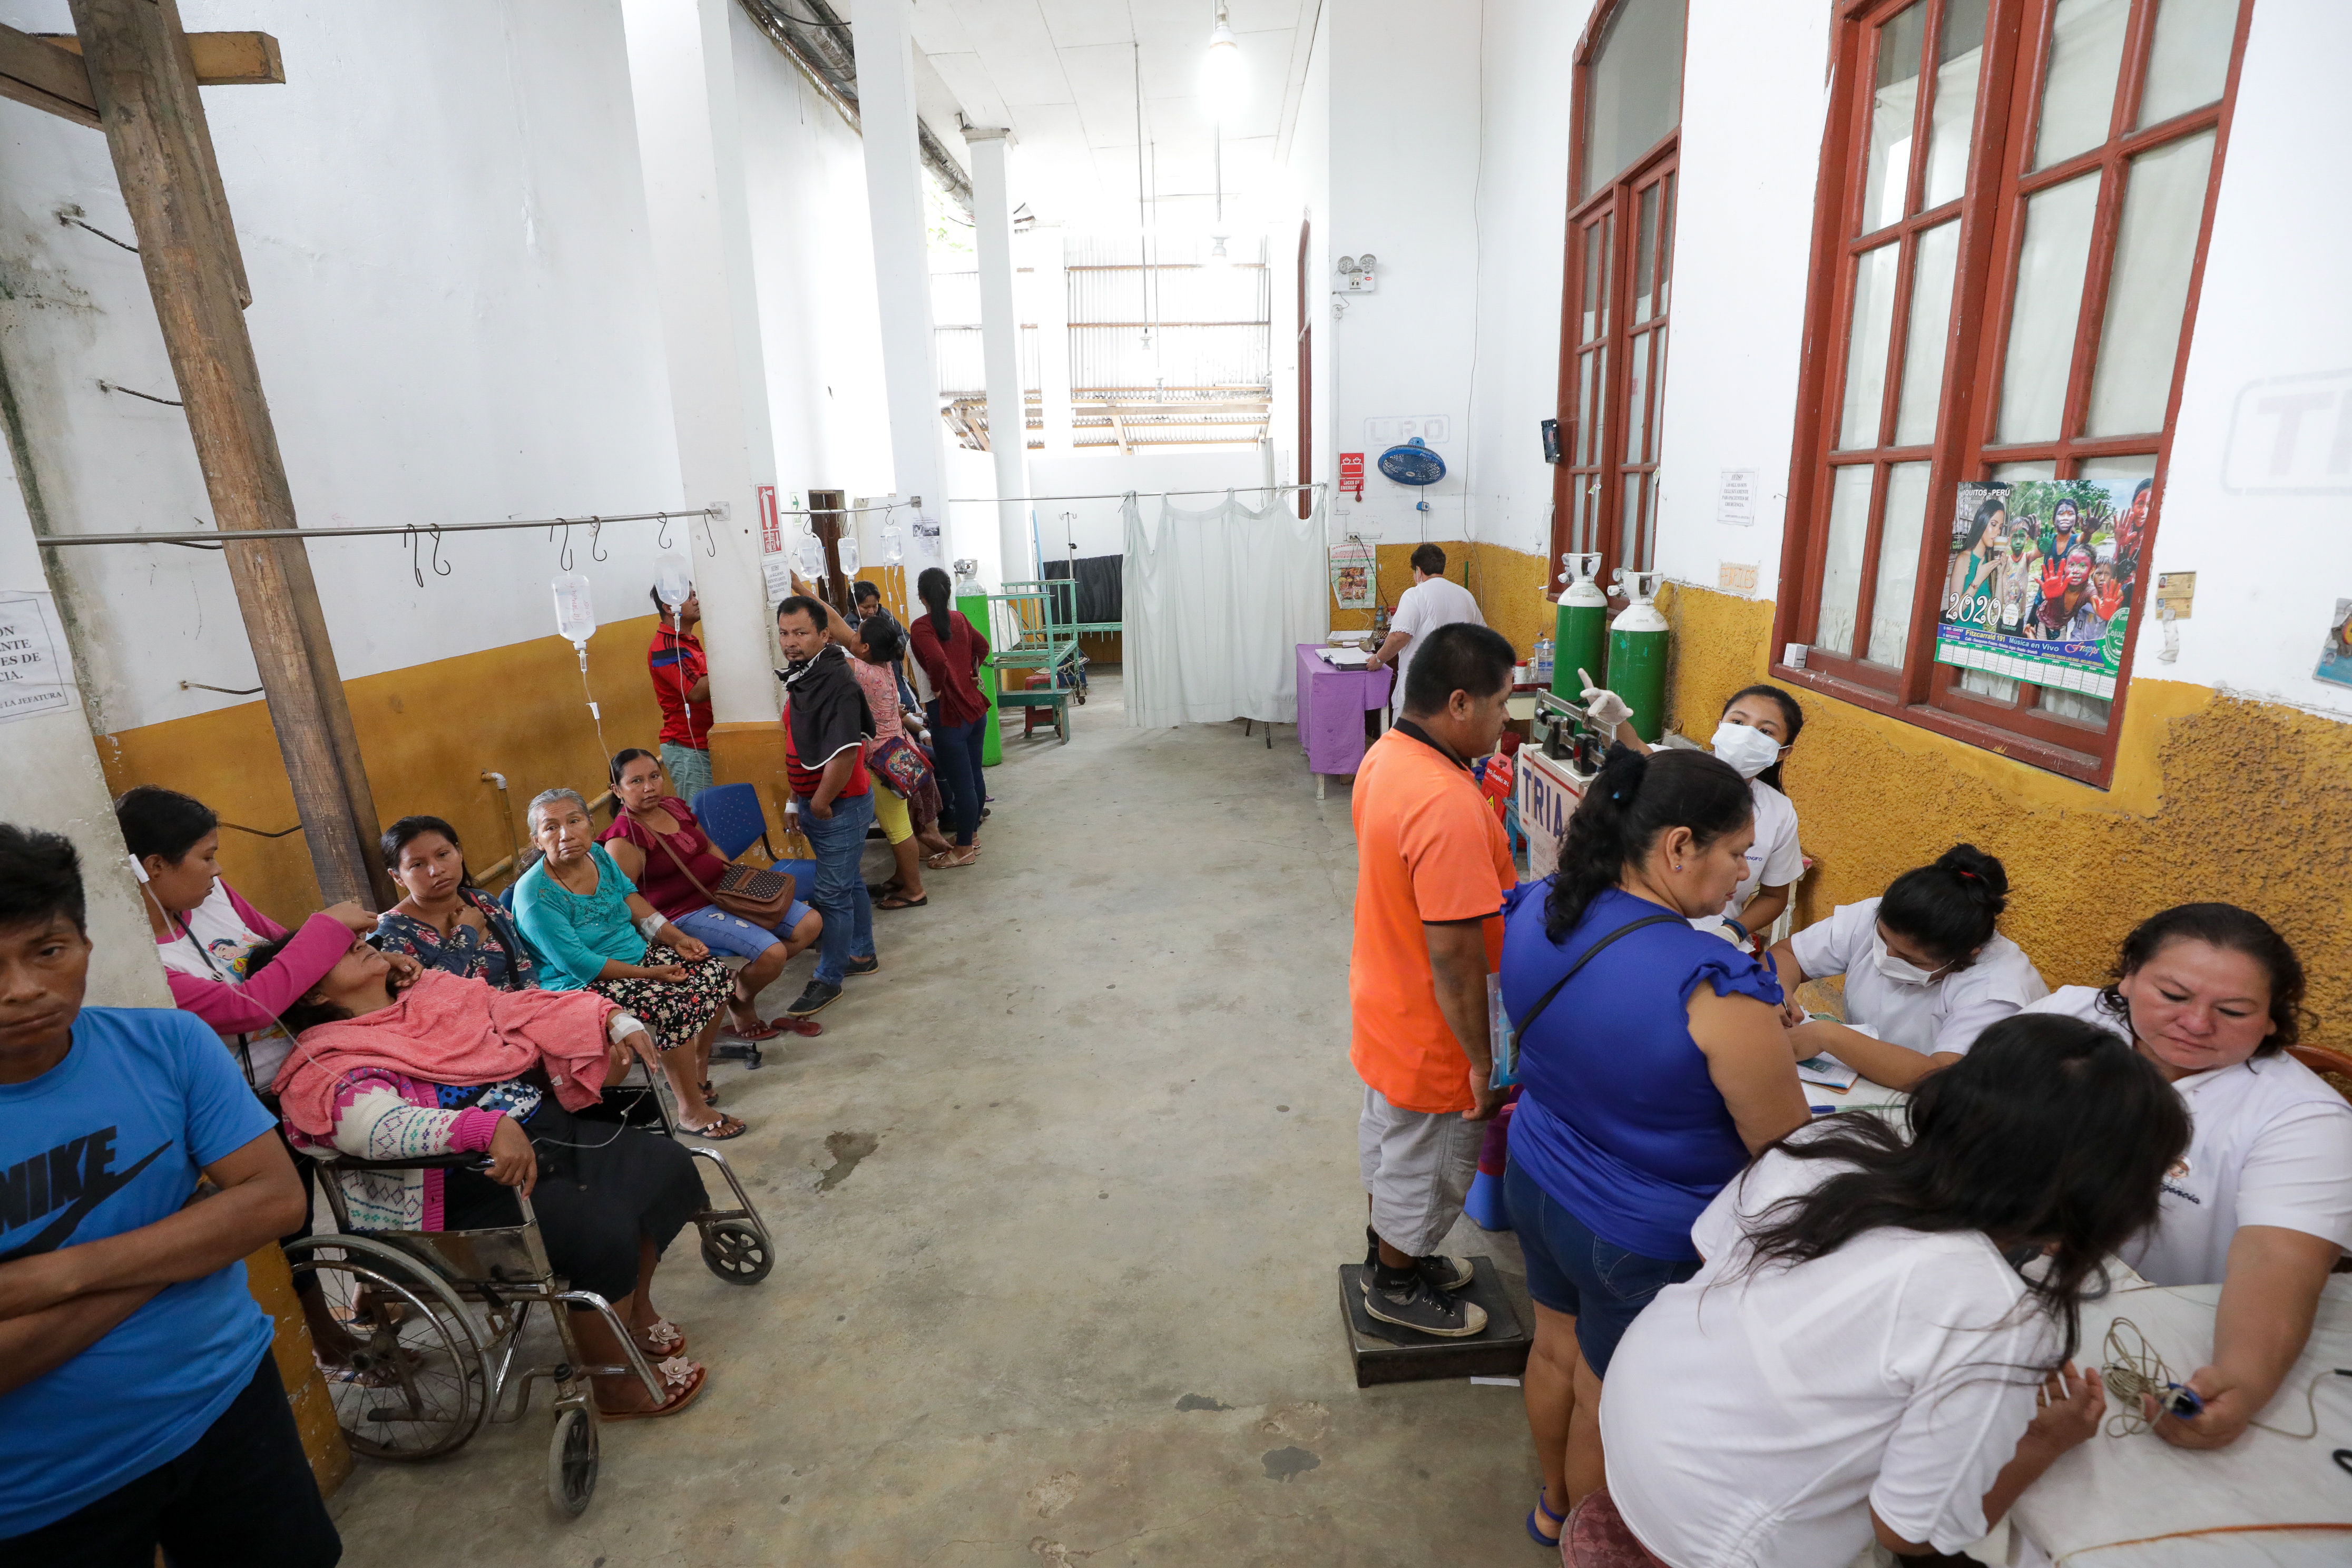 Gesundheitssystem in Peru ist überfordert 